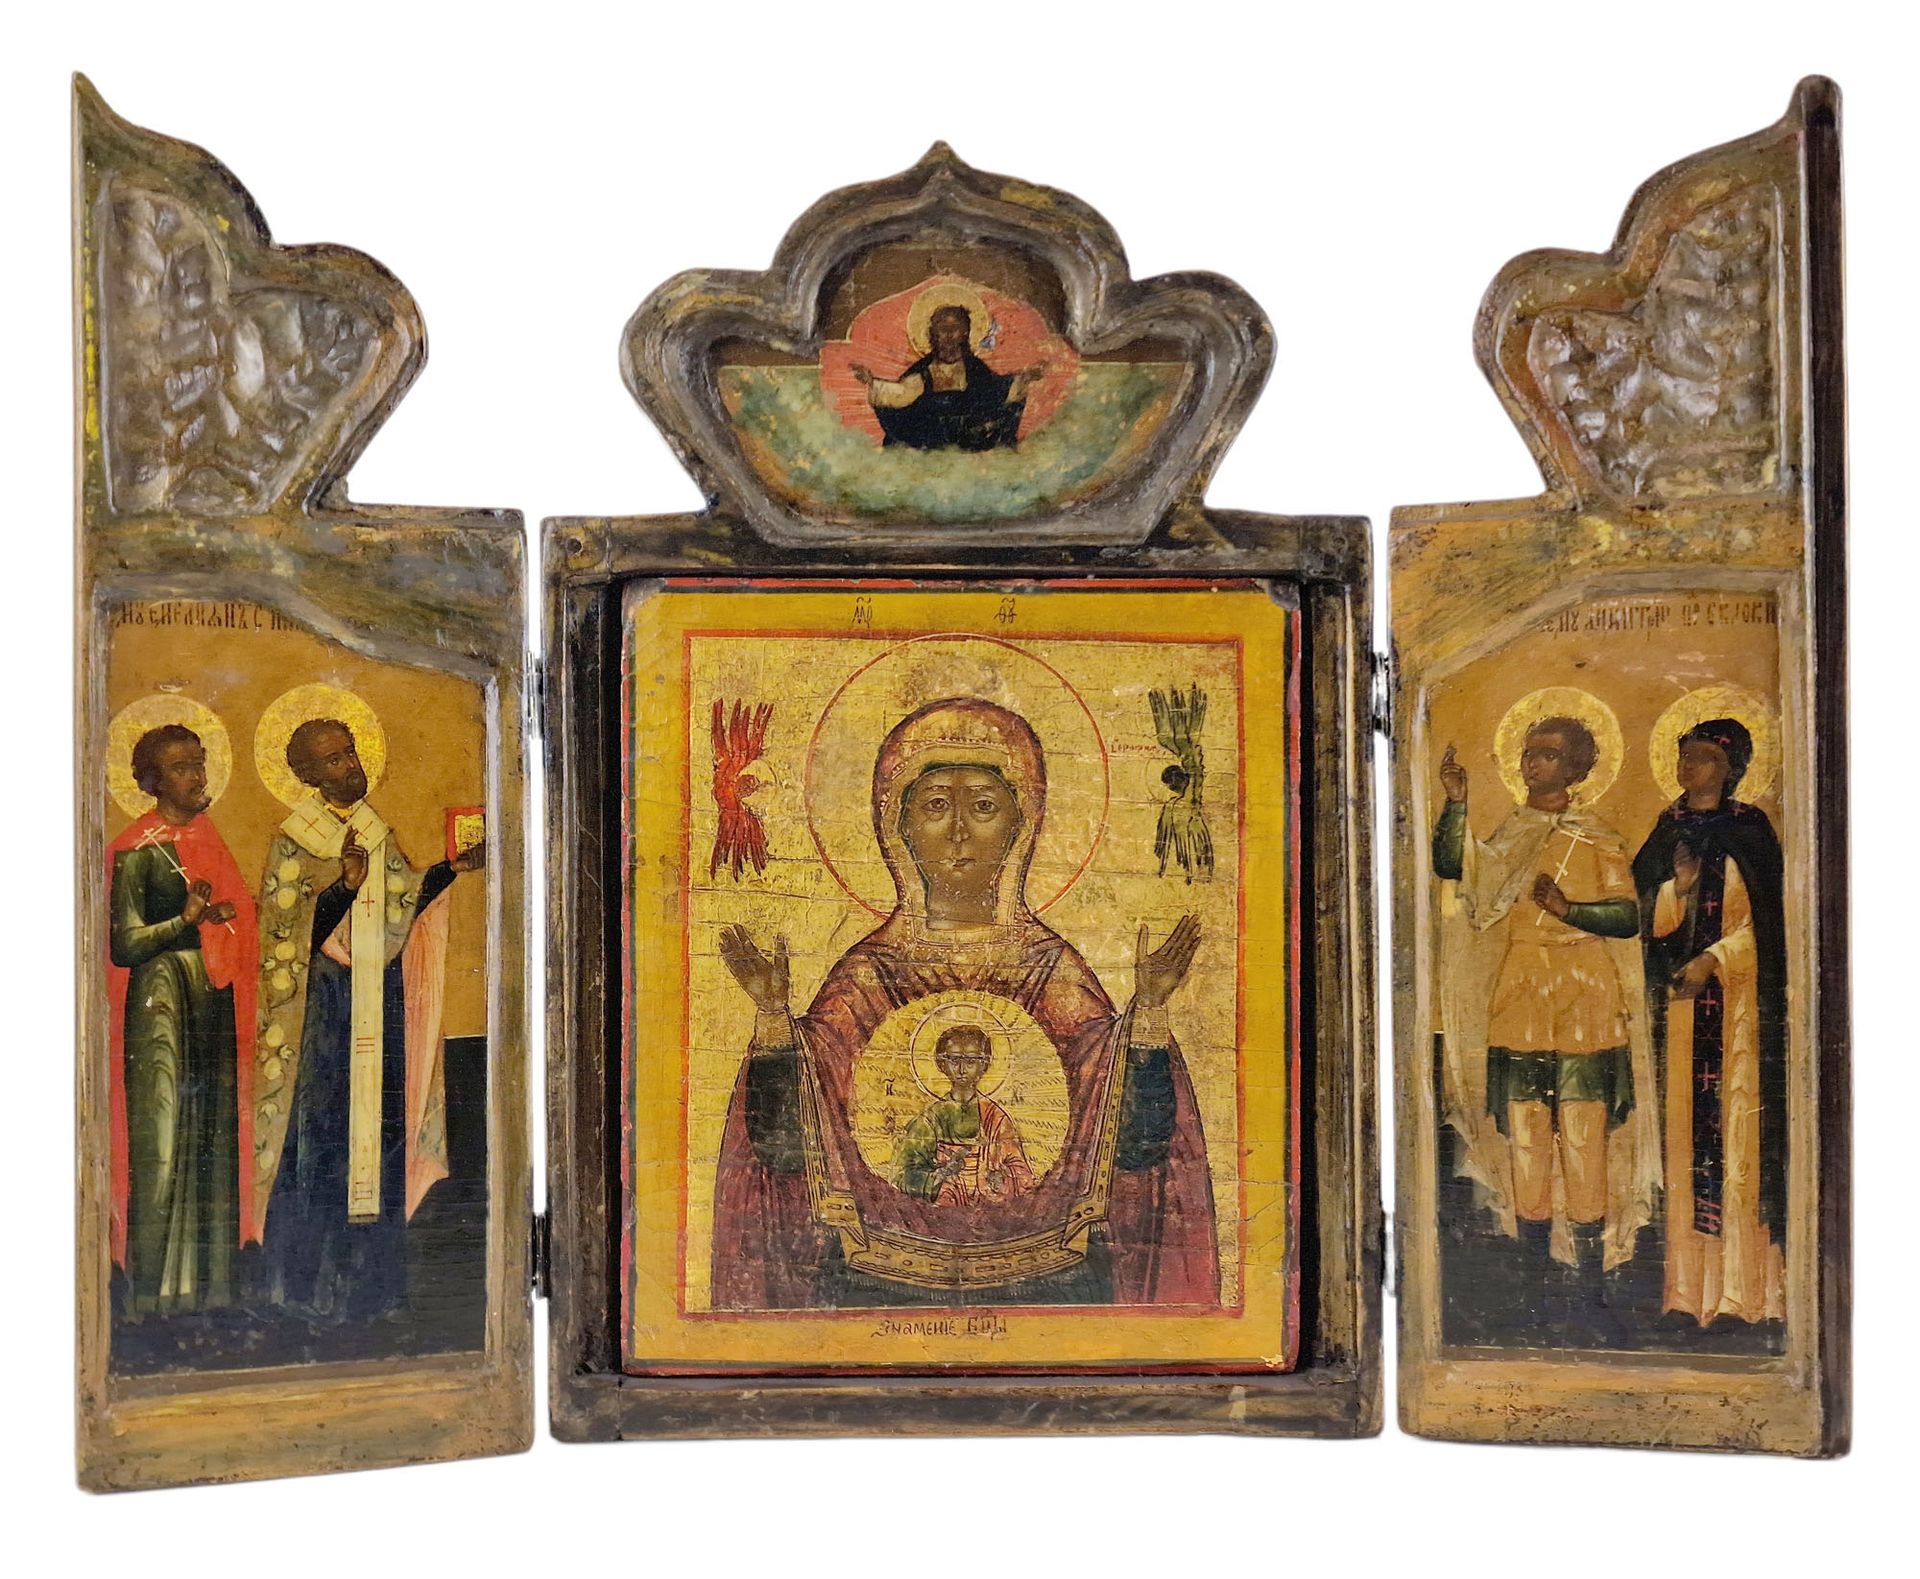 RUSSIE, ICONE EN TRIPTYQUE 木头上的画，中间是天主之母，边上是圣人。中央面板可能更古老。1900年左右的俄罗斯。

打开的尺寸：37 &hellip;